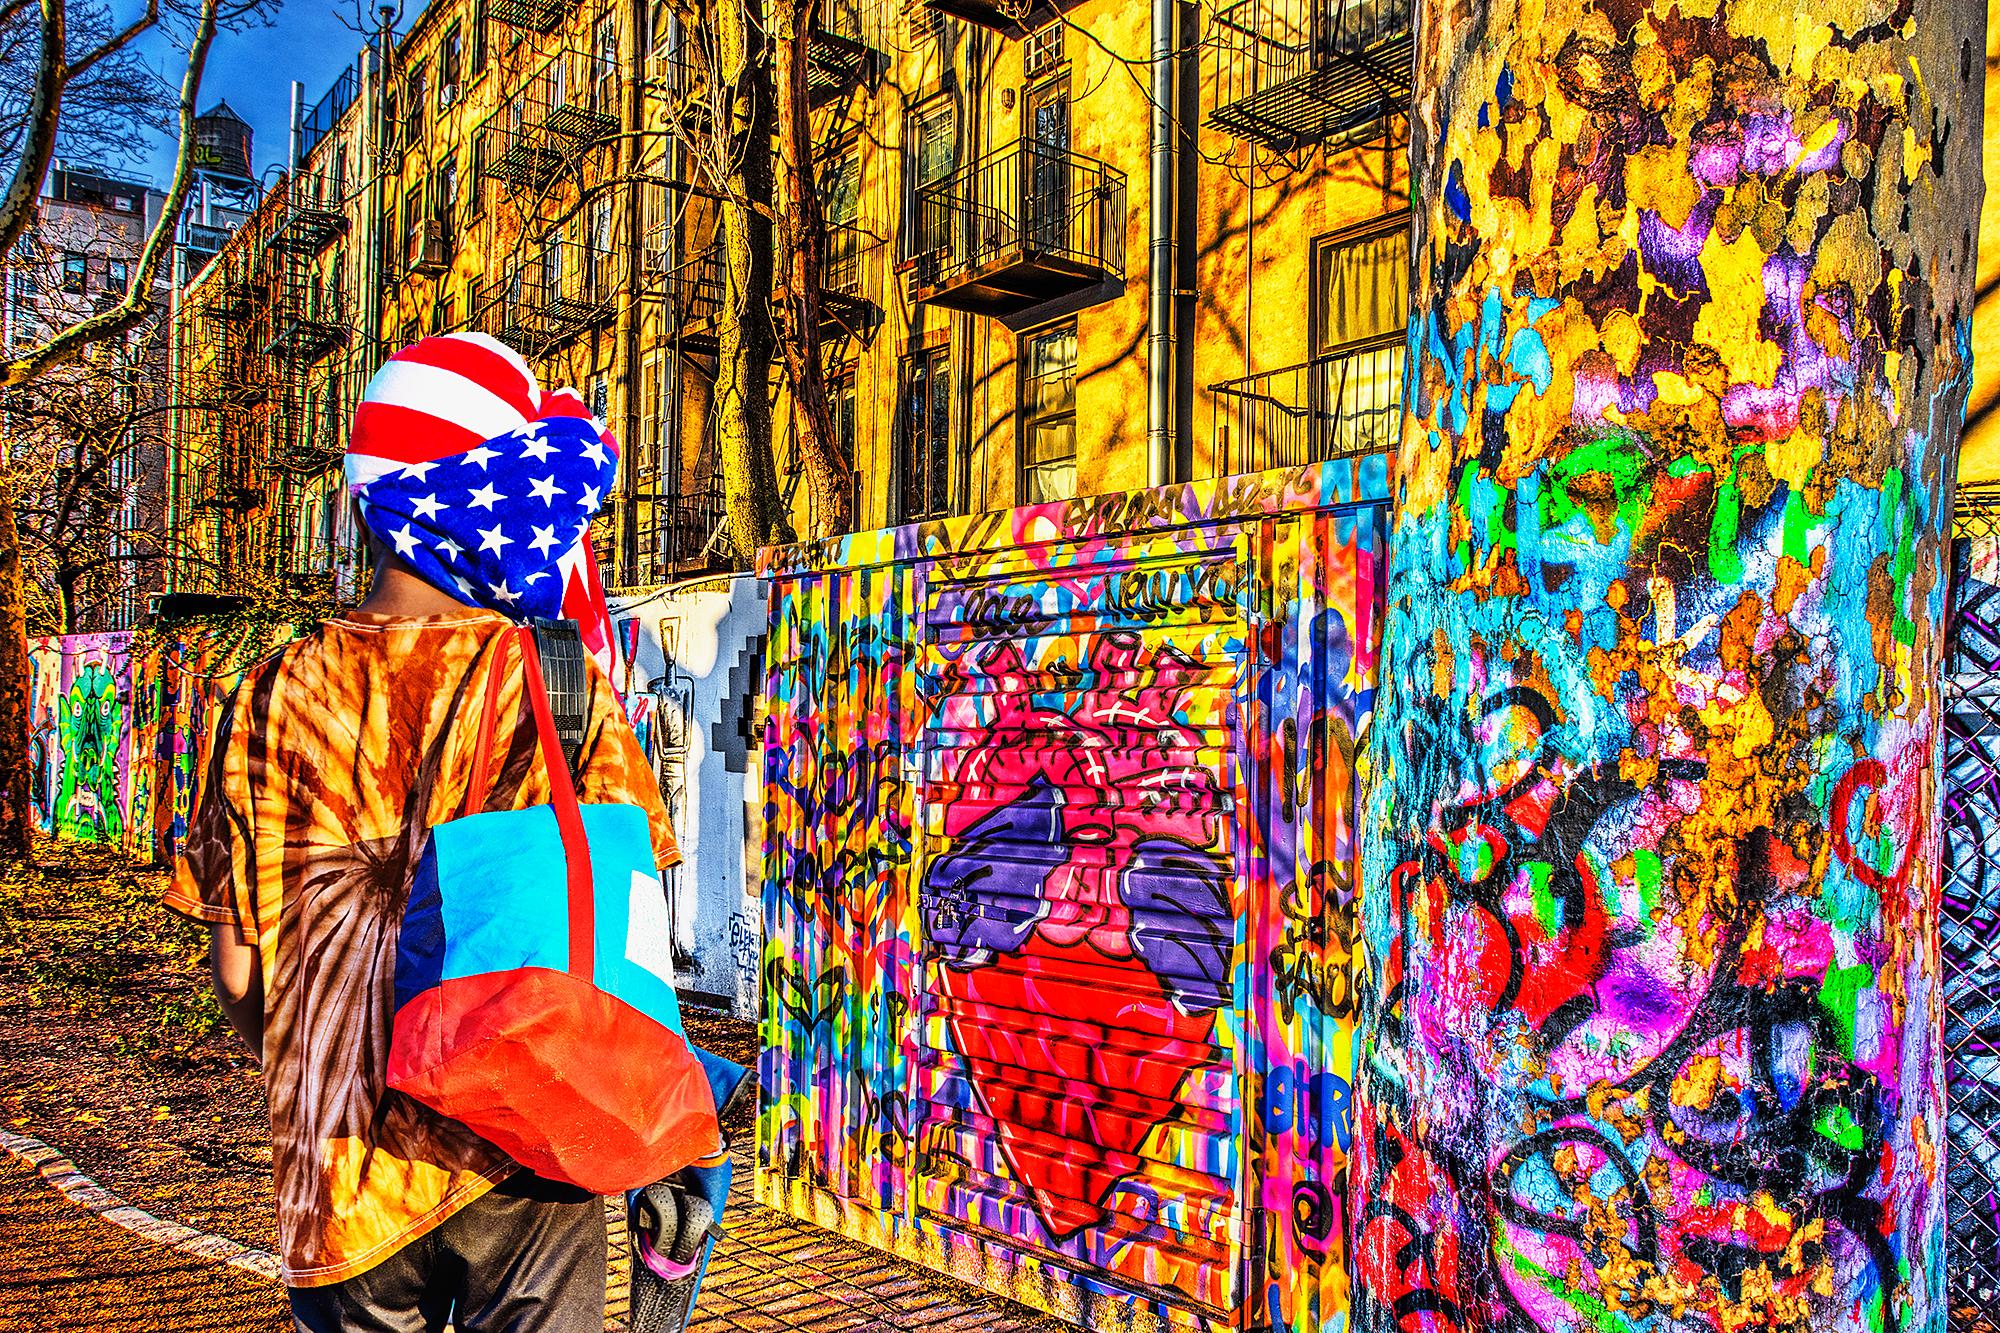 Abstract Photograph Mitchell Funk - Peinture murale d'art graffiti urbain  L'observateur du drapeau américain, New York Street Art